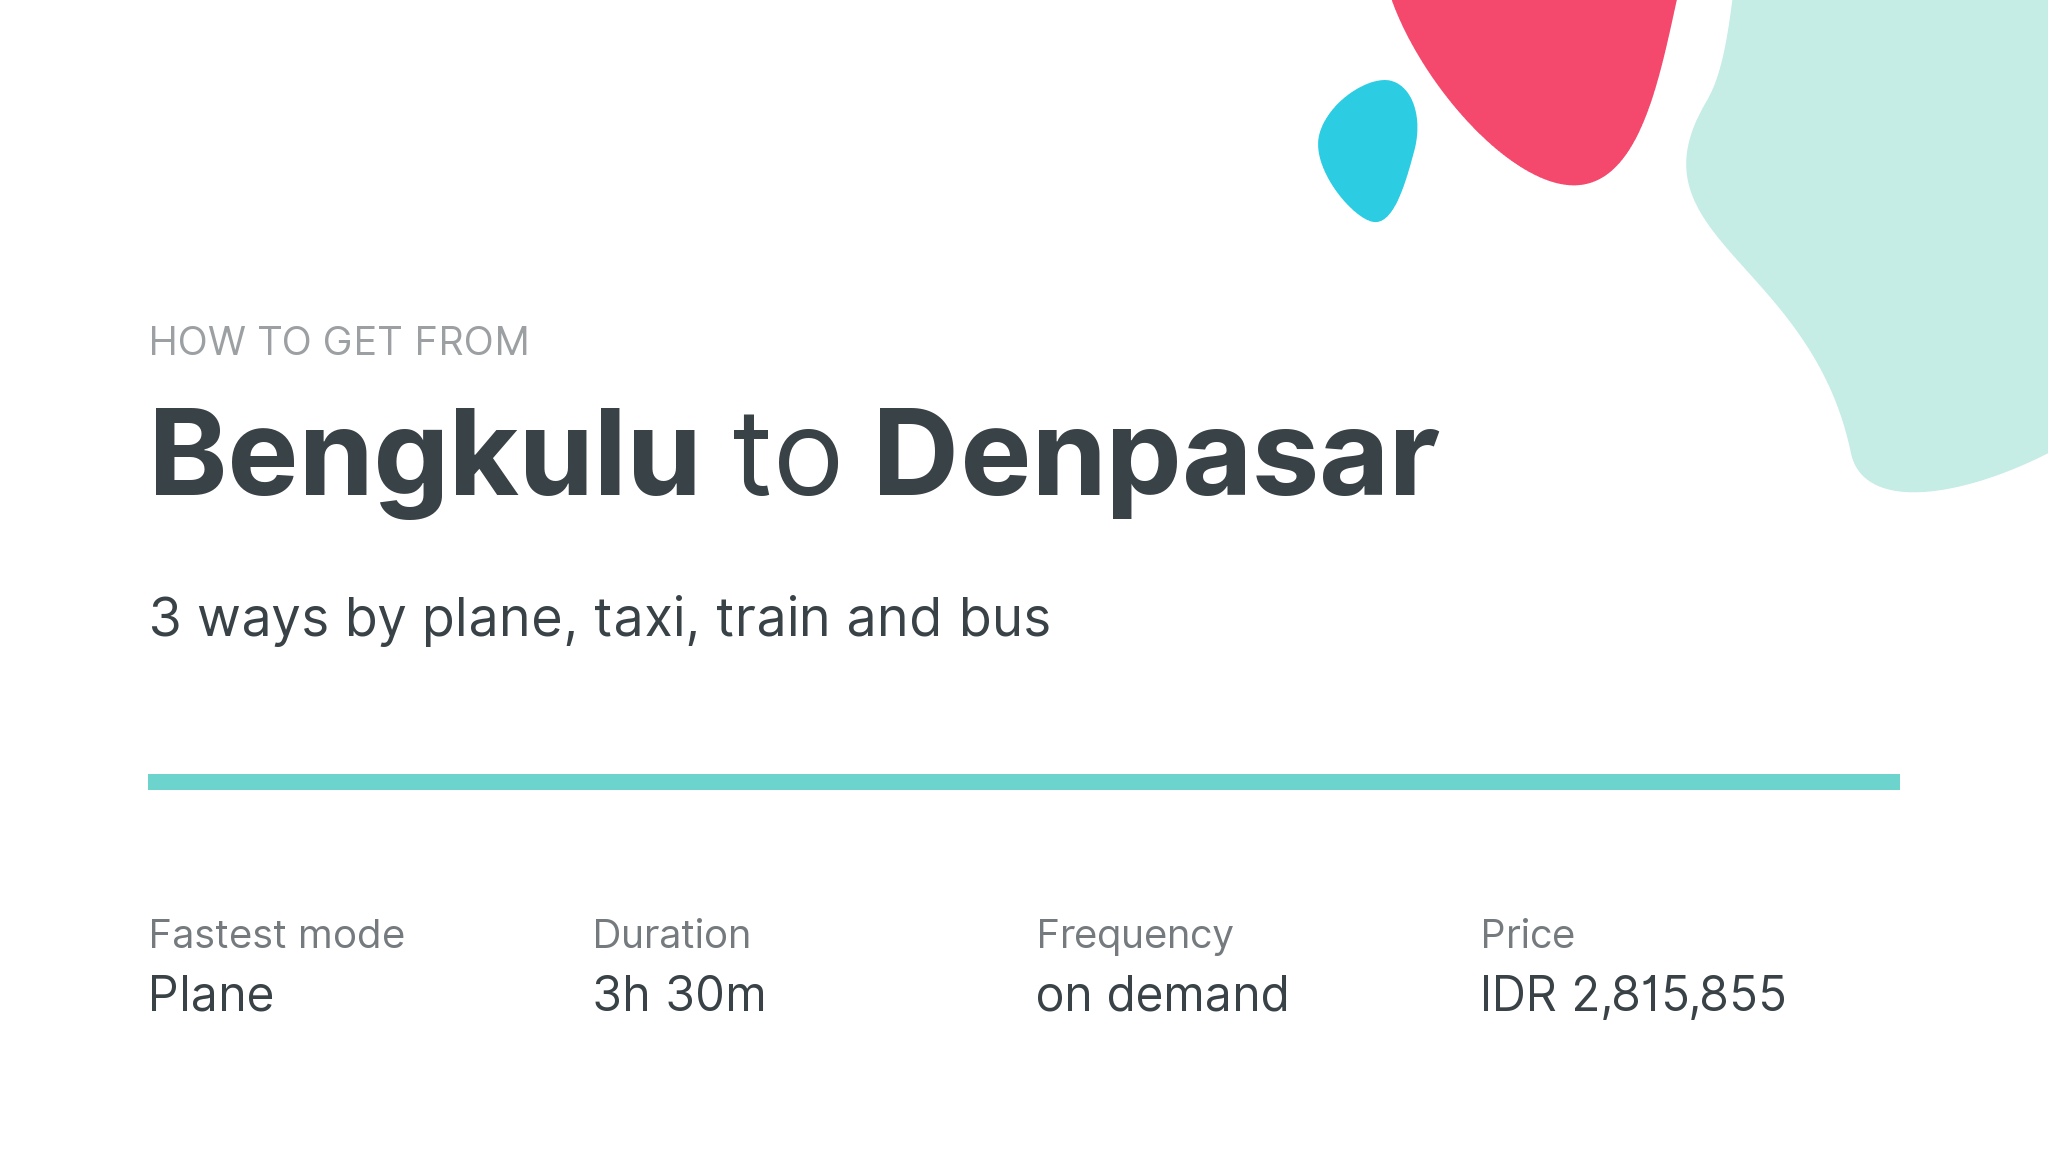 How do I get from Bengkulu to Denpasar